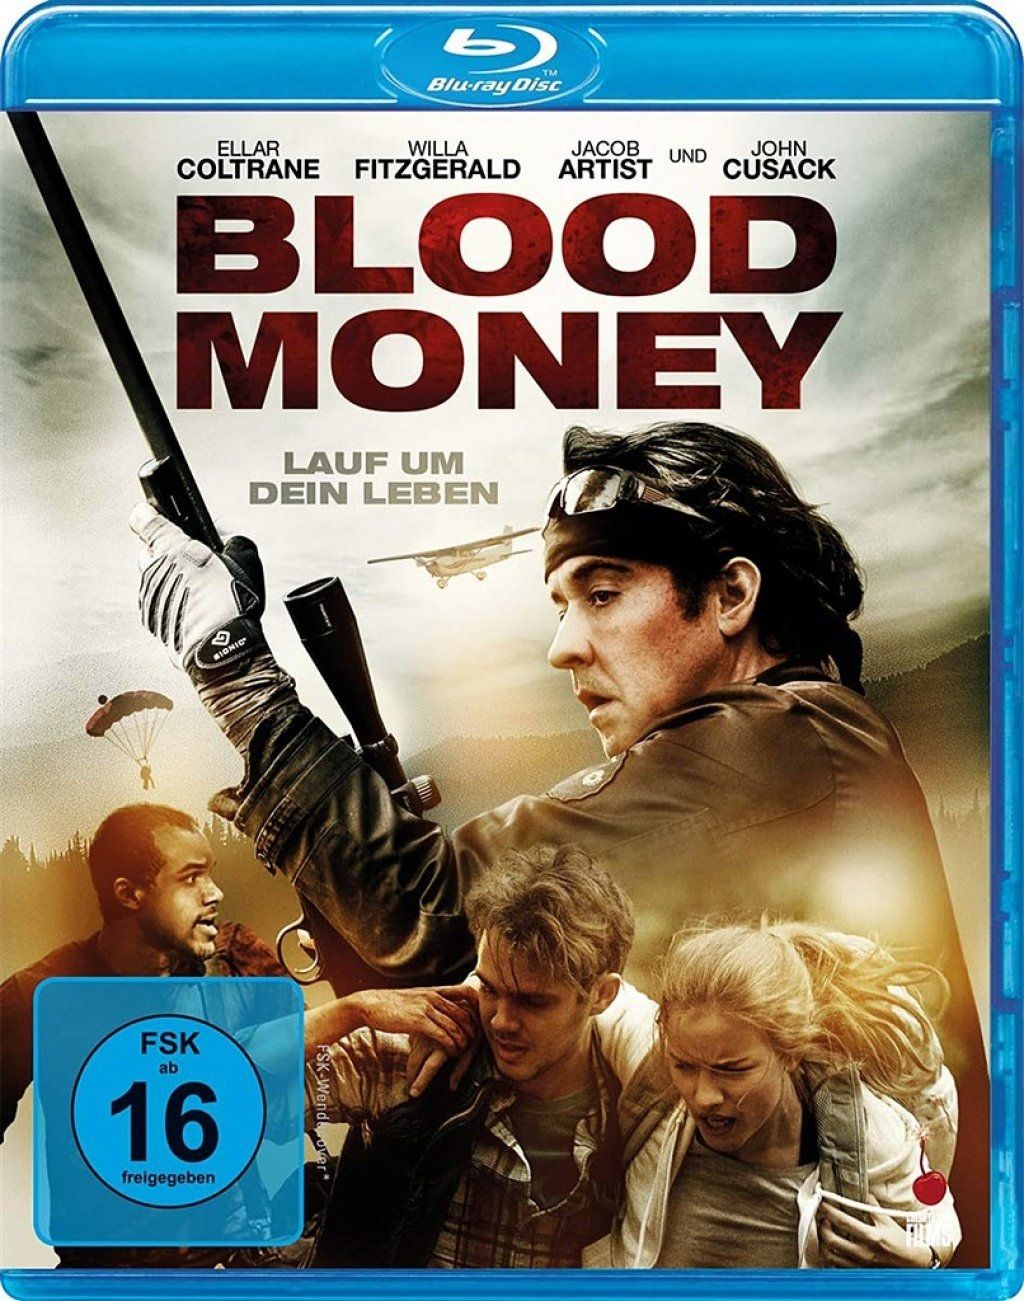 Blood Money - Lauf um dein Leben (BLURAY)